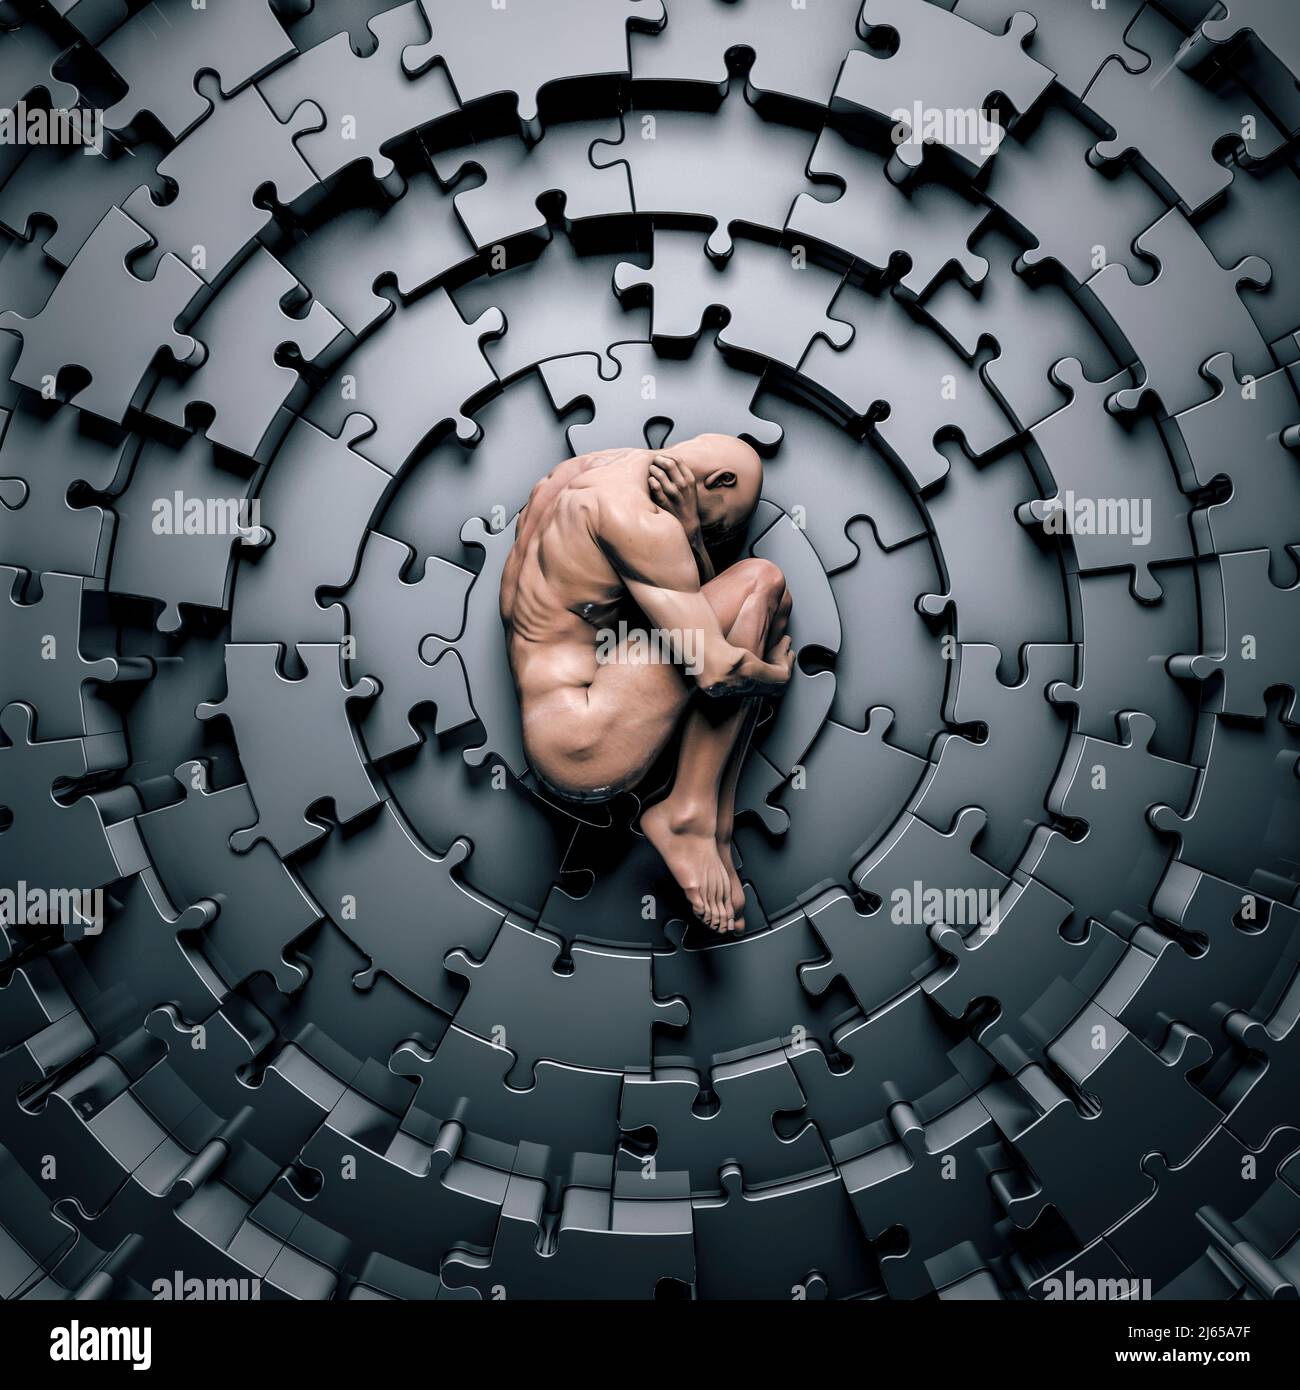 Puzzle-Konzept für psychische Gesundheit - 3D Illustration einer traurigen männlichen Figur in fötaler Position, die auf einem kreisförmigen Metall-Puzzle liegt Stockfoto